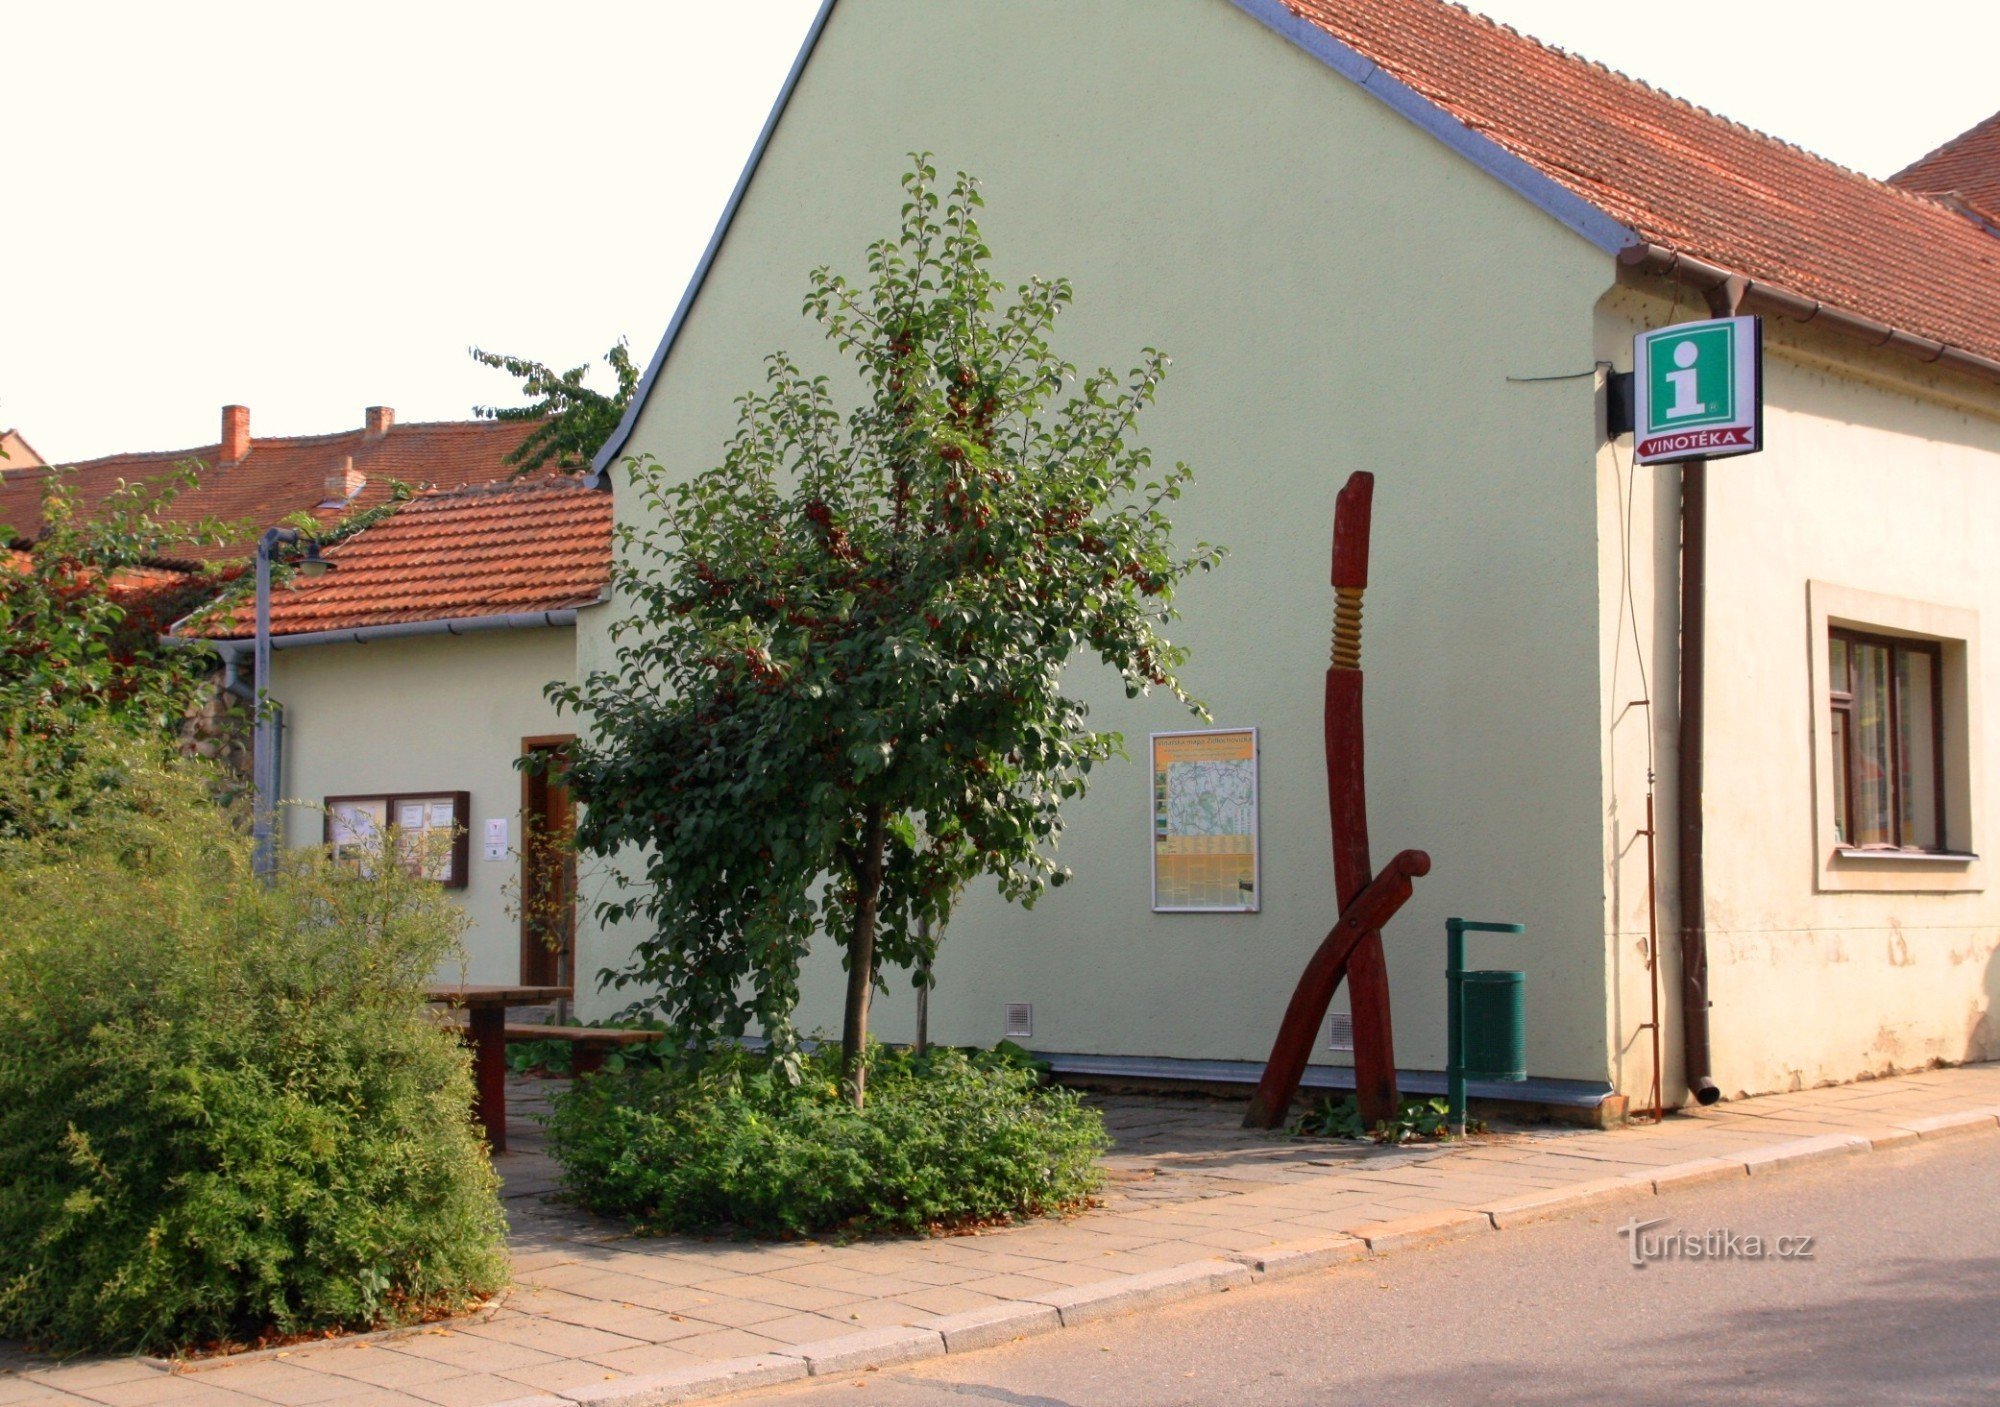 Židlochovice - alueellinen matkailu- ja tietokeskus sekä viinikauppa